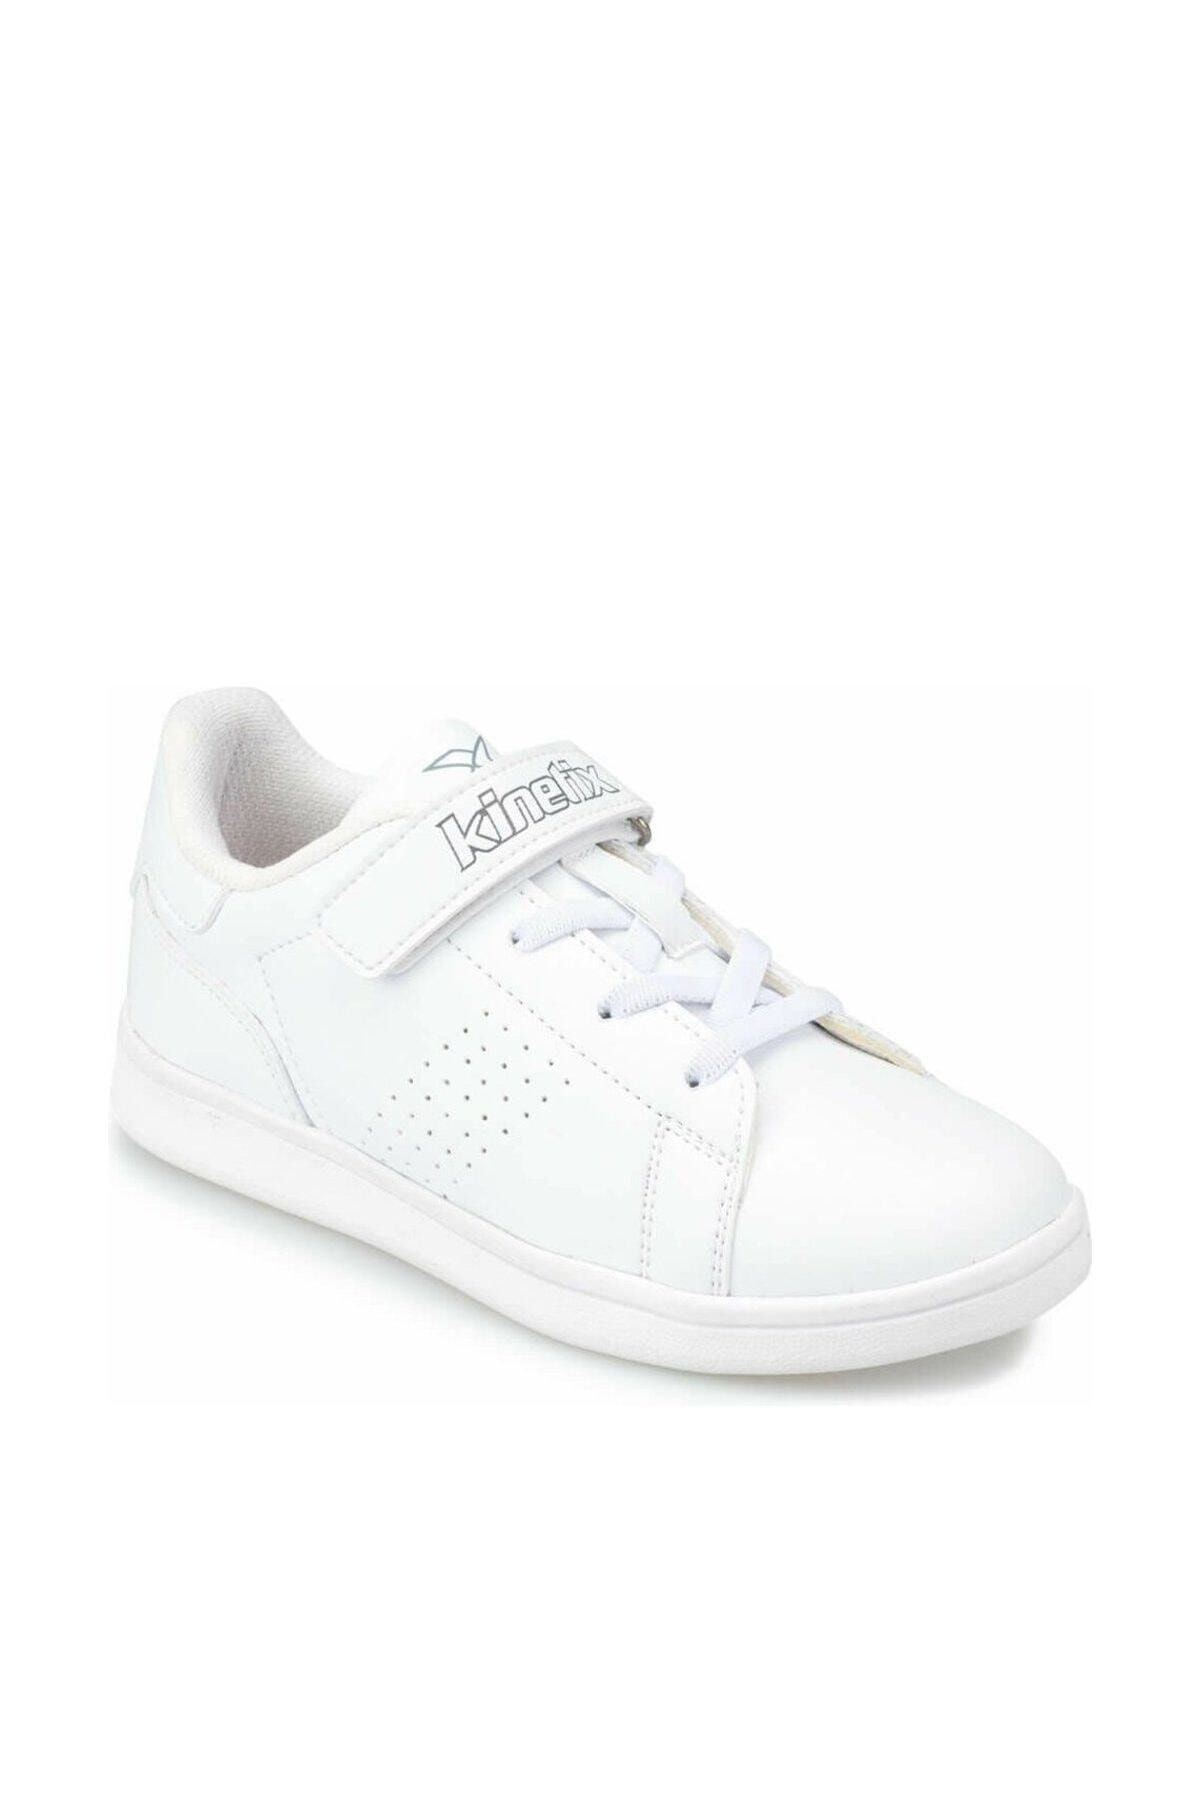 Kinetix Plain J Beyaz Açık Gri Erkek Çocuk Sneaker Ayakkabı 100379819